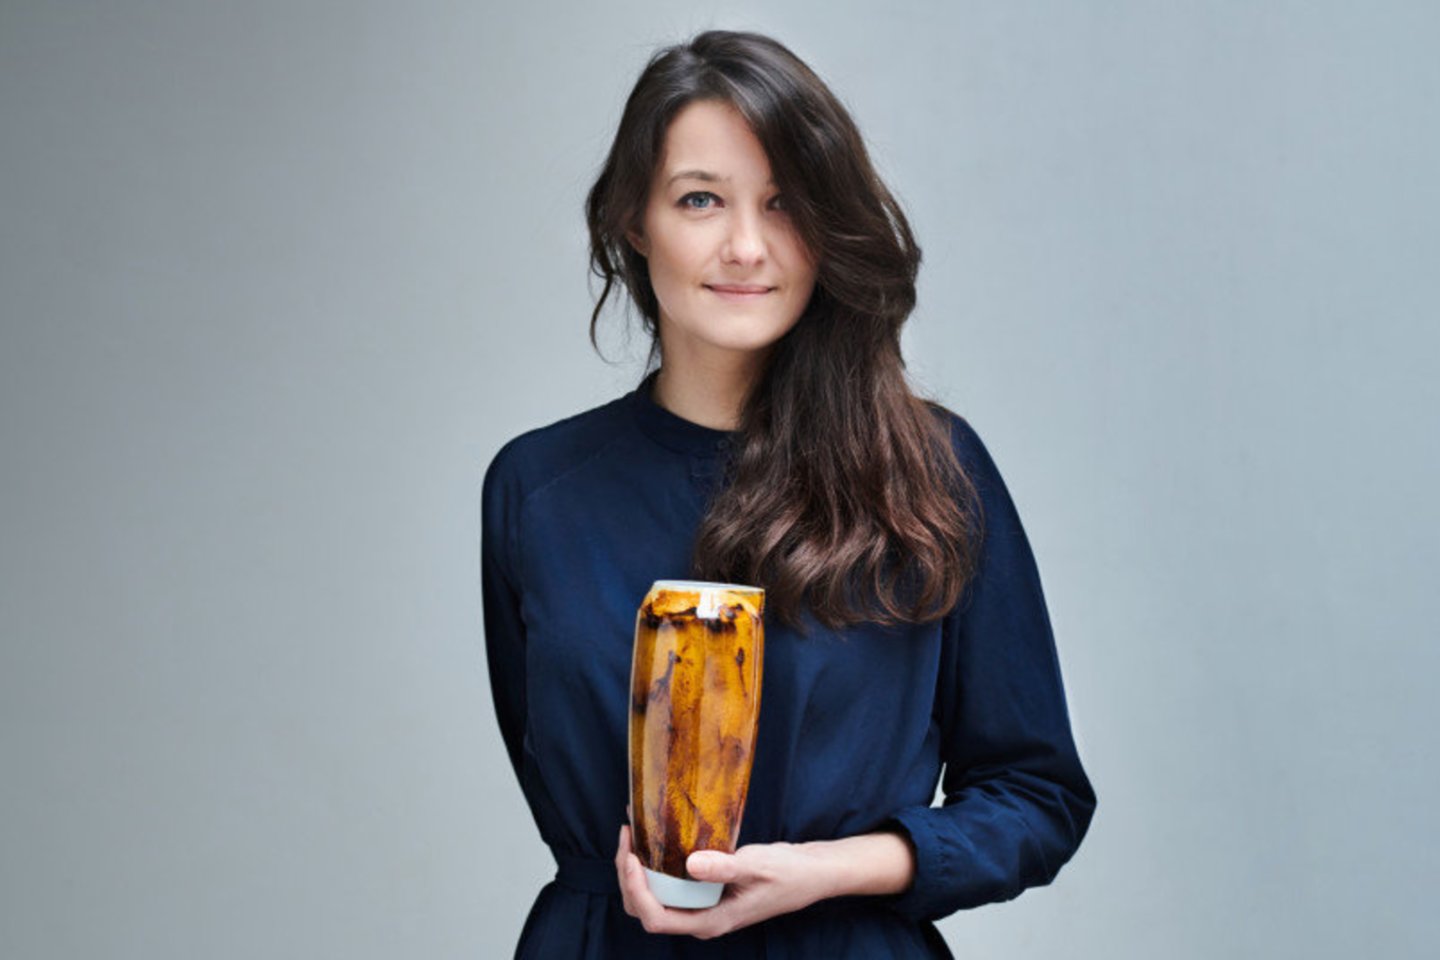 Lietuvoje ir Nyderlanduose kurianti medžiagų ir produktų dizainerė Agnė Kučerenkaitė jau du kartus laimėjo Naujojo europinio bauhauzo idėjas skleidžiančios WORTH partnerystės programos finansavimą – tokio įvertinimo sulaukė jos vystomas projektas „Biofuel Waste is Bliss“.<br>Asmeninio Agnės Kučerenkaitės archyvo (autorius Bas Muda) nuotr.